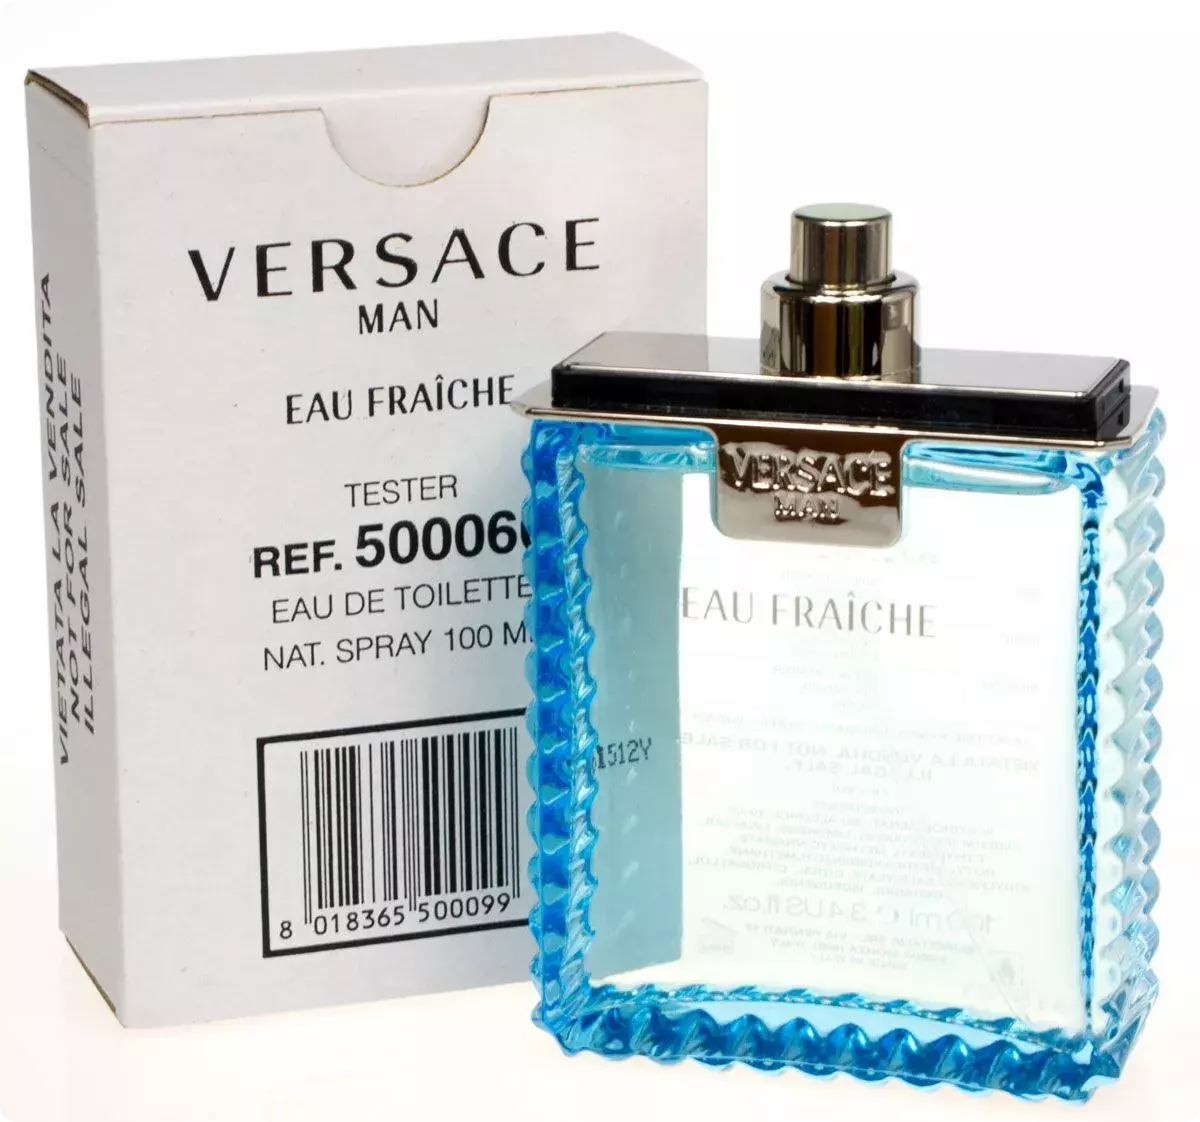 Свежие ароматы для мужчин. Versace man Eau Fraiche 100 ml. Versace man Eau Fraiche EDT 100ml. Versace Eau Fraiche men 100ml EDT Test. Тестер Versace man Eau Fraiche 100 ml.